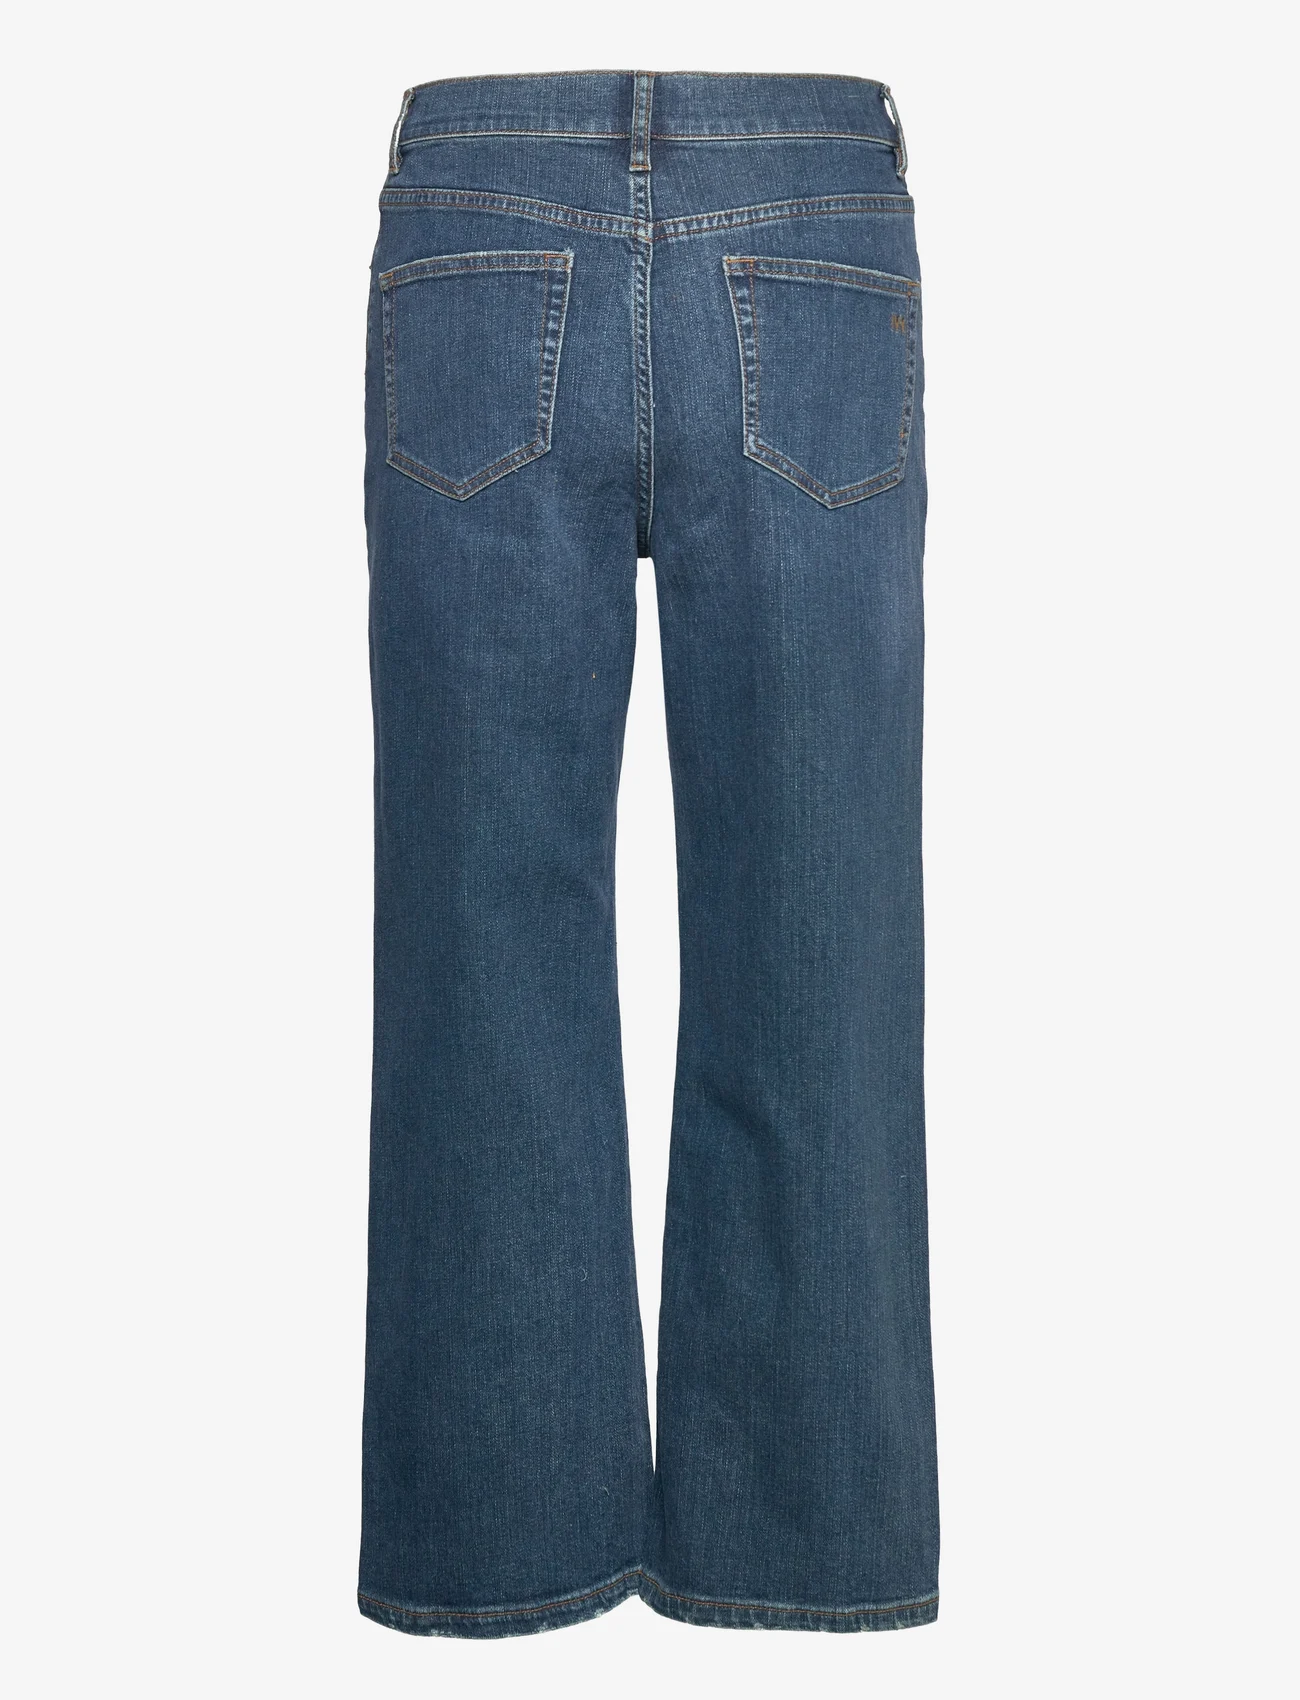 IVY Copenhagen - Milola EARTHxSWAN UHW Jeans Wash Or - hosen mit weitem bein - denim blue - 1